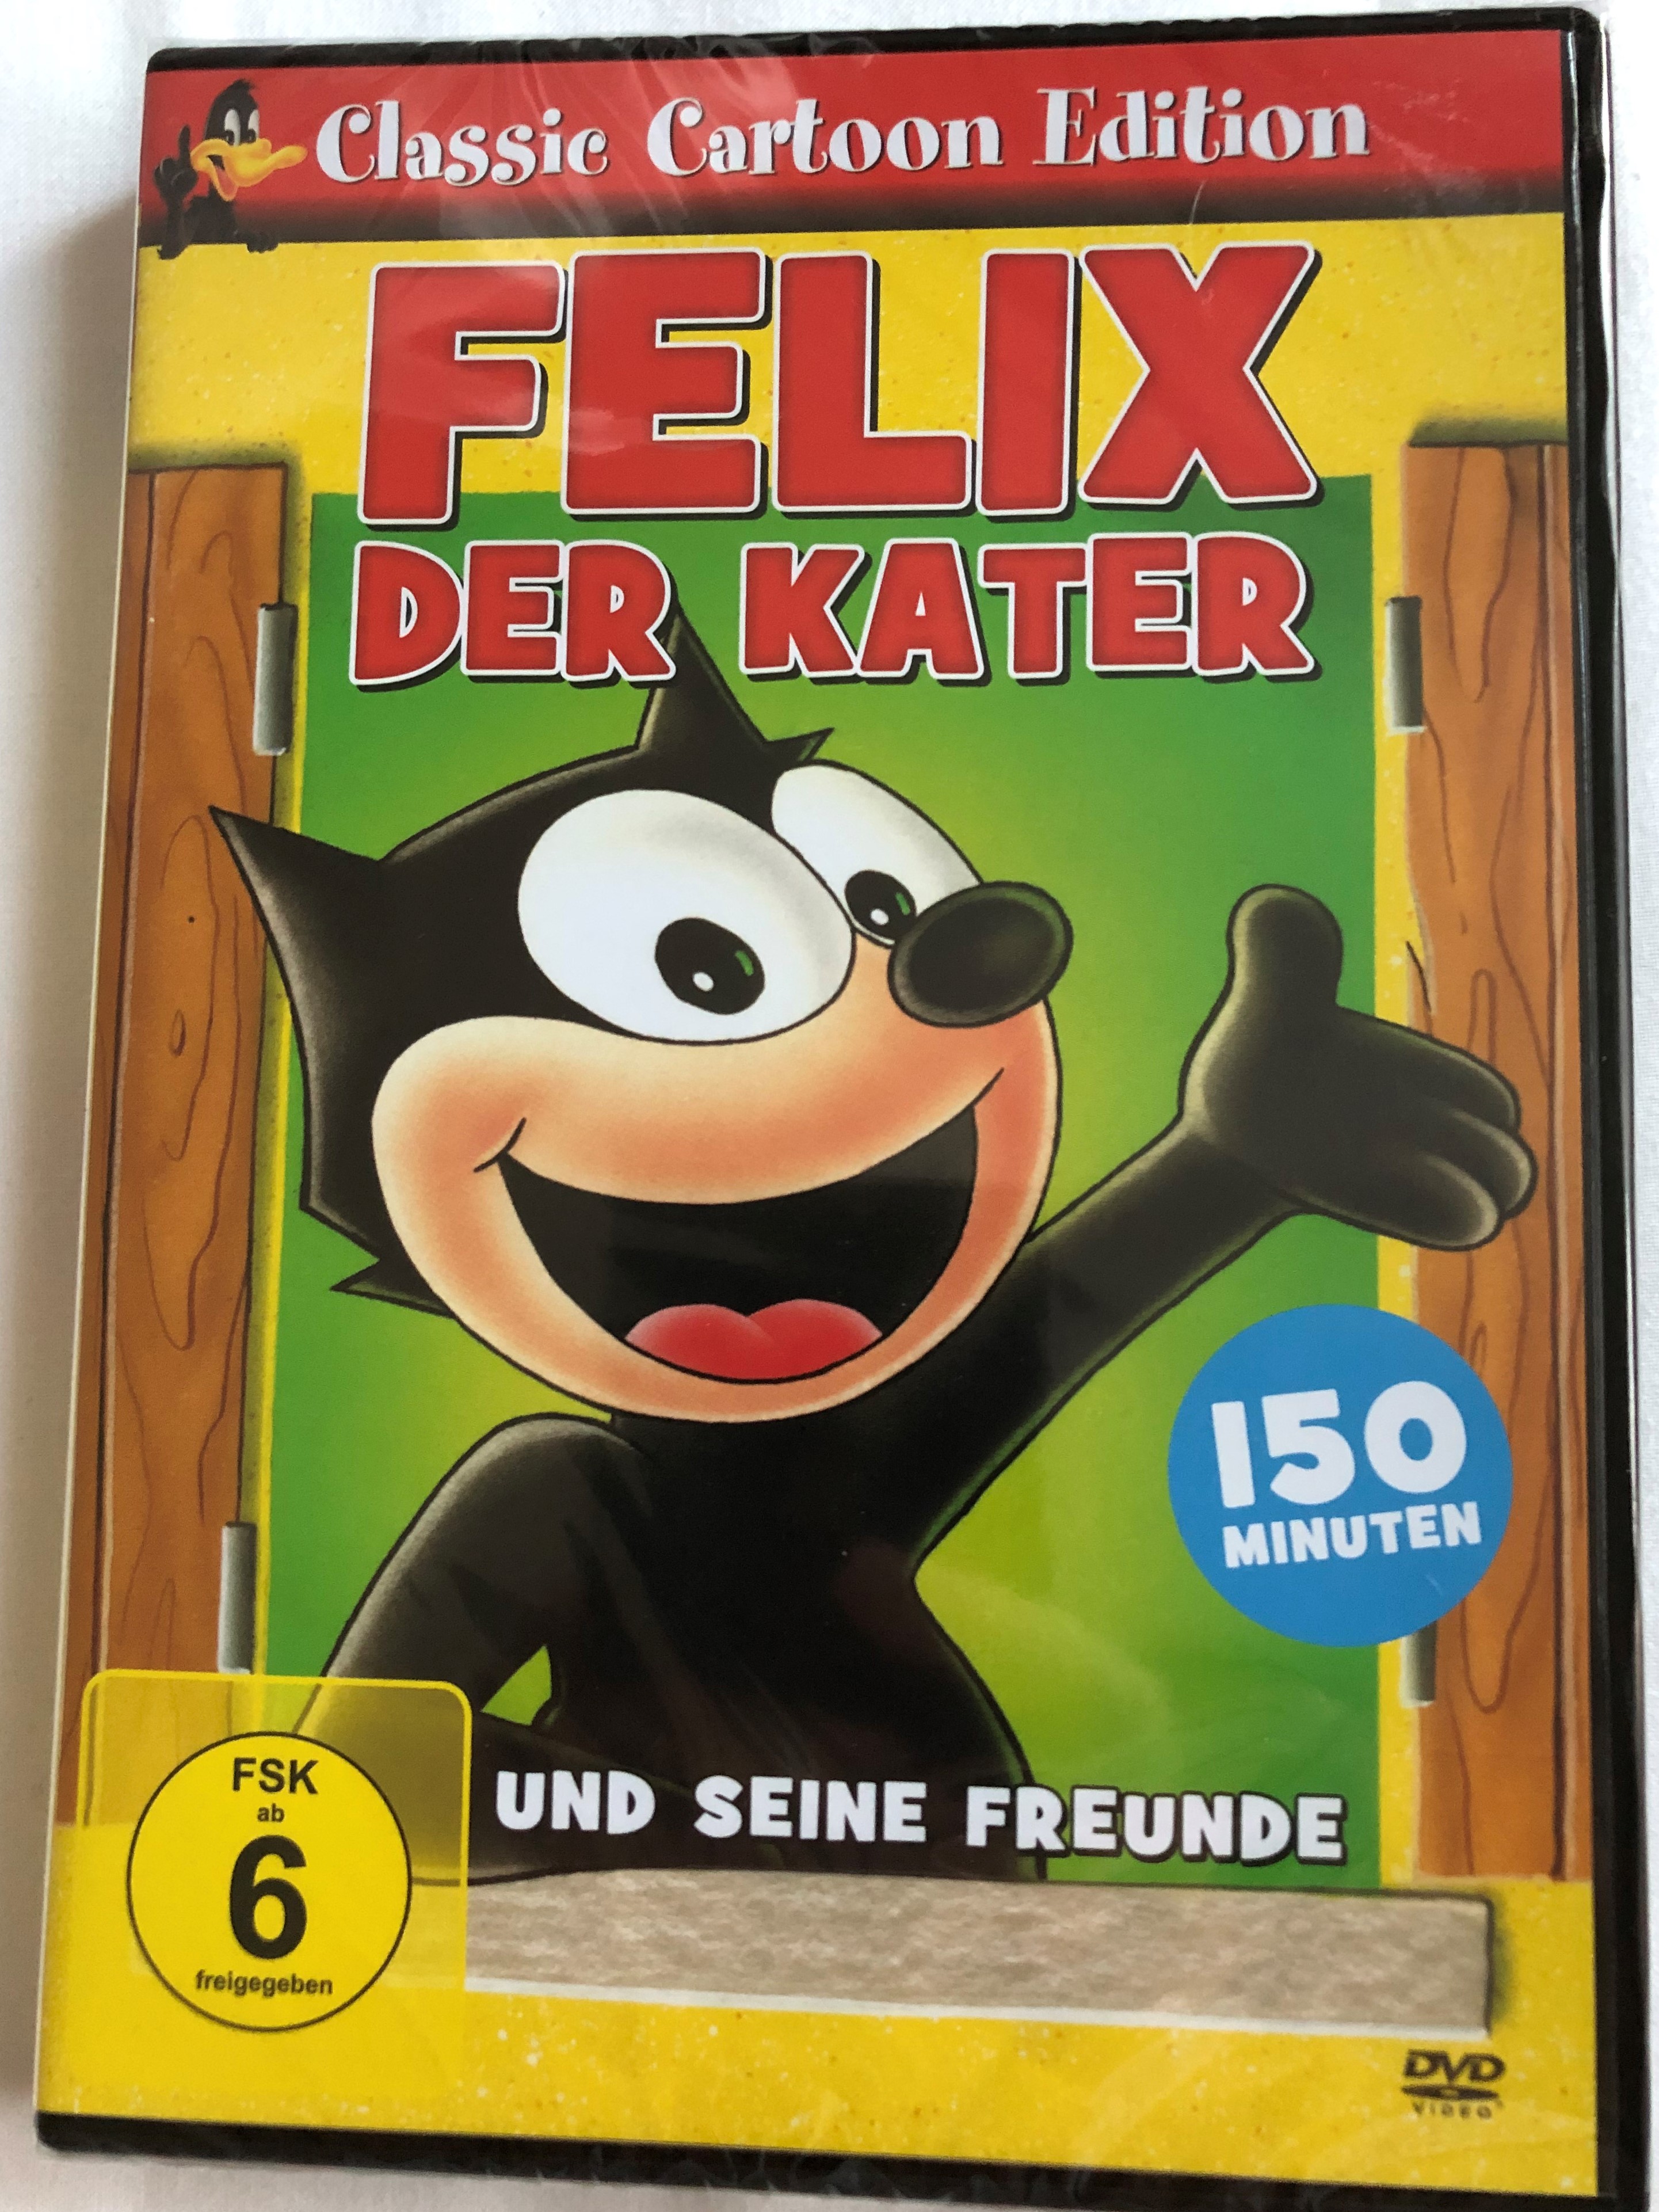 felix-der-kater-und-seine-freunde-dvd-2014-felix-the-cat-and-his-friends-felix-der-erfinder-ein-goldfisch-in-ehren-k-nig-prahlhans-die-gans-die-goldene-eier-legt-oh-diese-katze-classic-cartoon-edition-150-minutes-1-.jpg